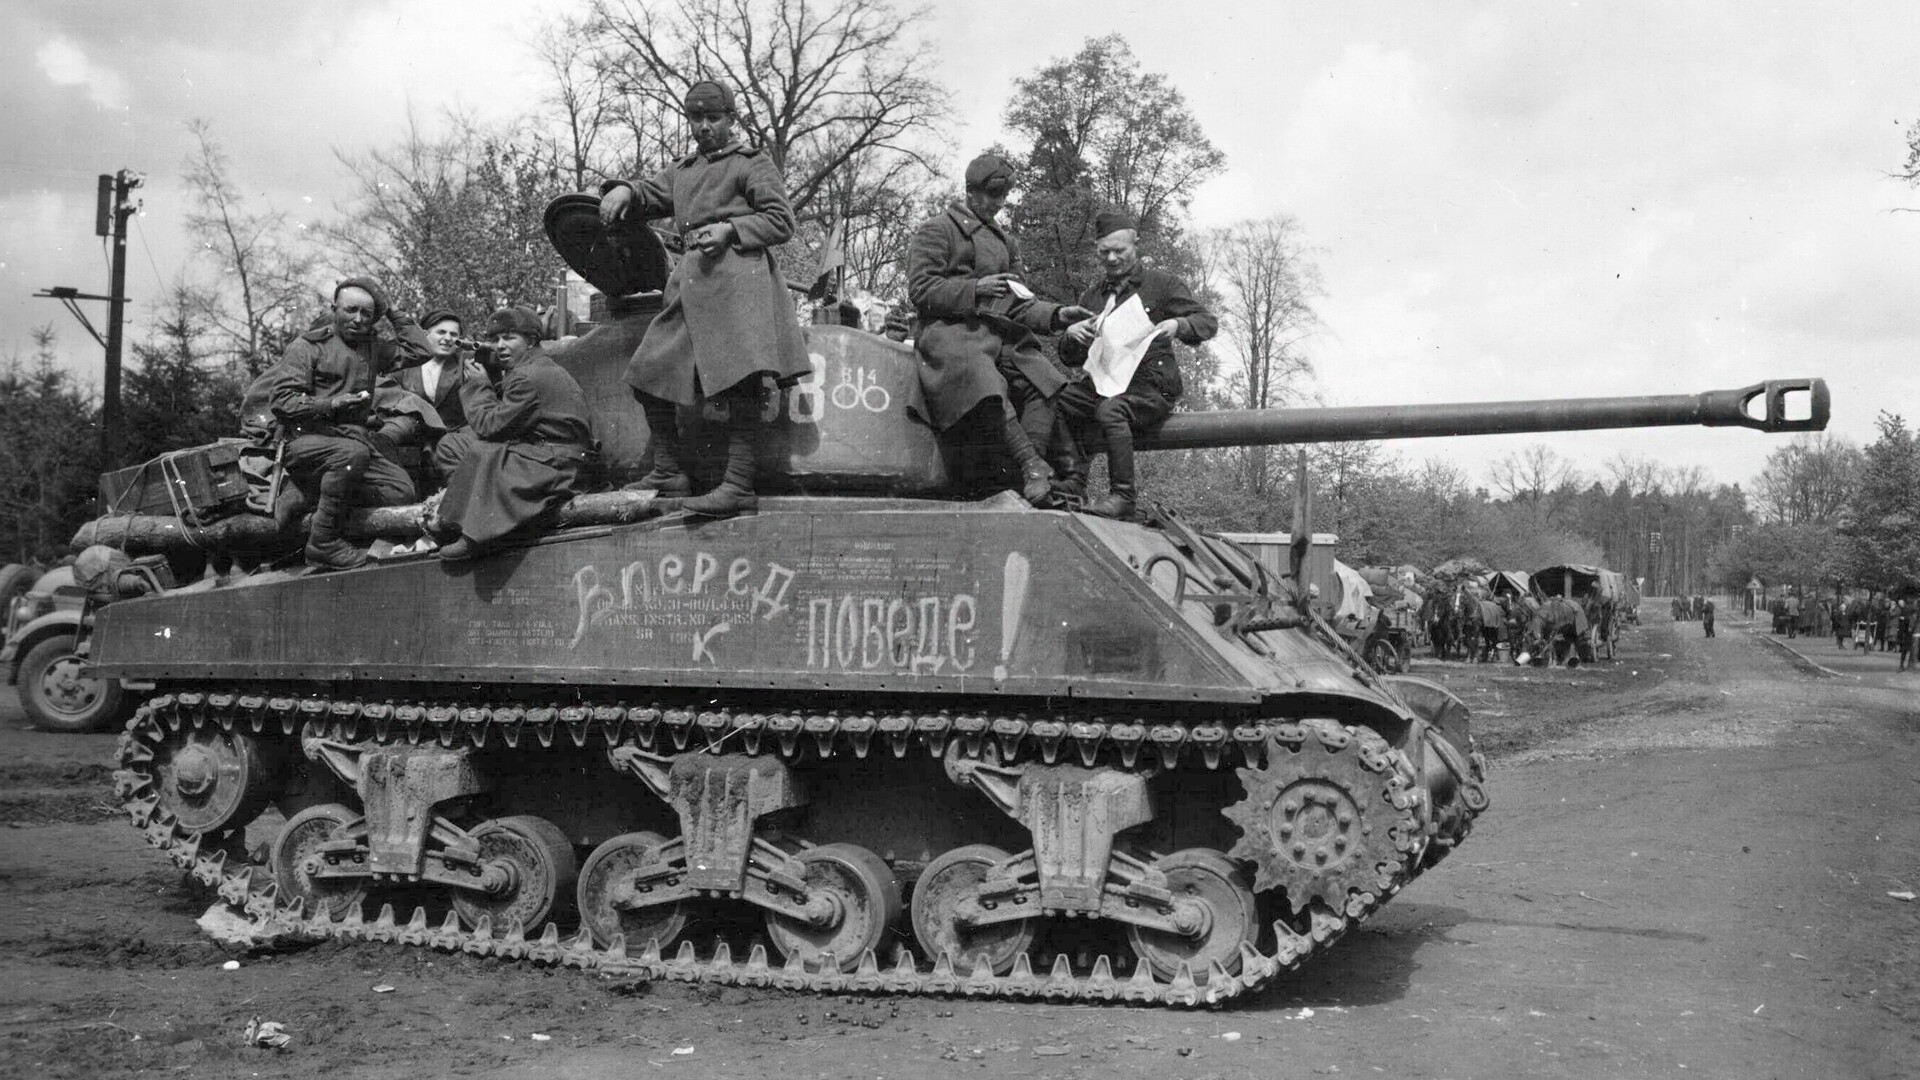 Tank v Grabowu v Nemčiji, 3. maj 1945